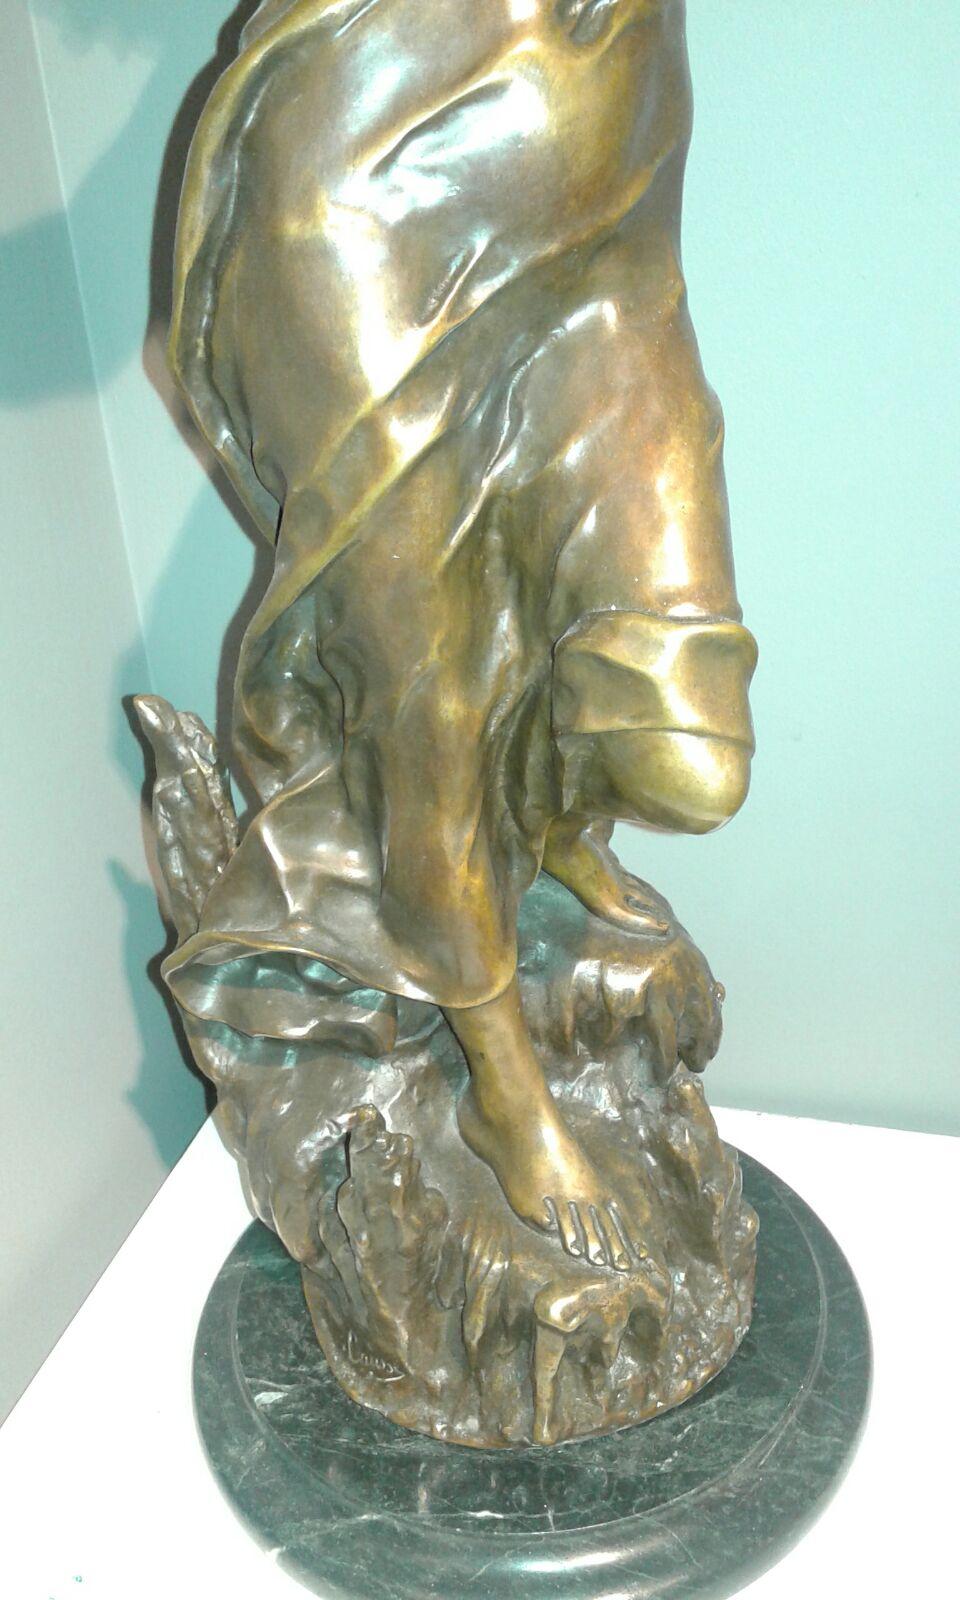 Diosa. multiple bronze d'origine. Esculpture Moderniste
Julien Caussé (également appelé Cadet-Julien Caussé, Cadet Julien Caussé et Julien Cadet Caussé) (1869-1914) est un sculpteur français prolifique de la période de l'art nouveau de la fin du